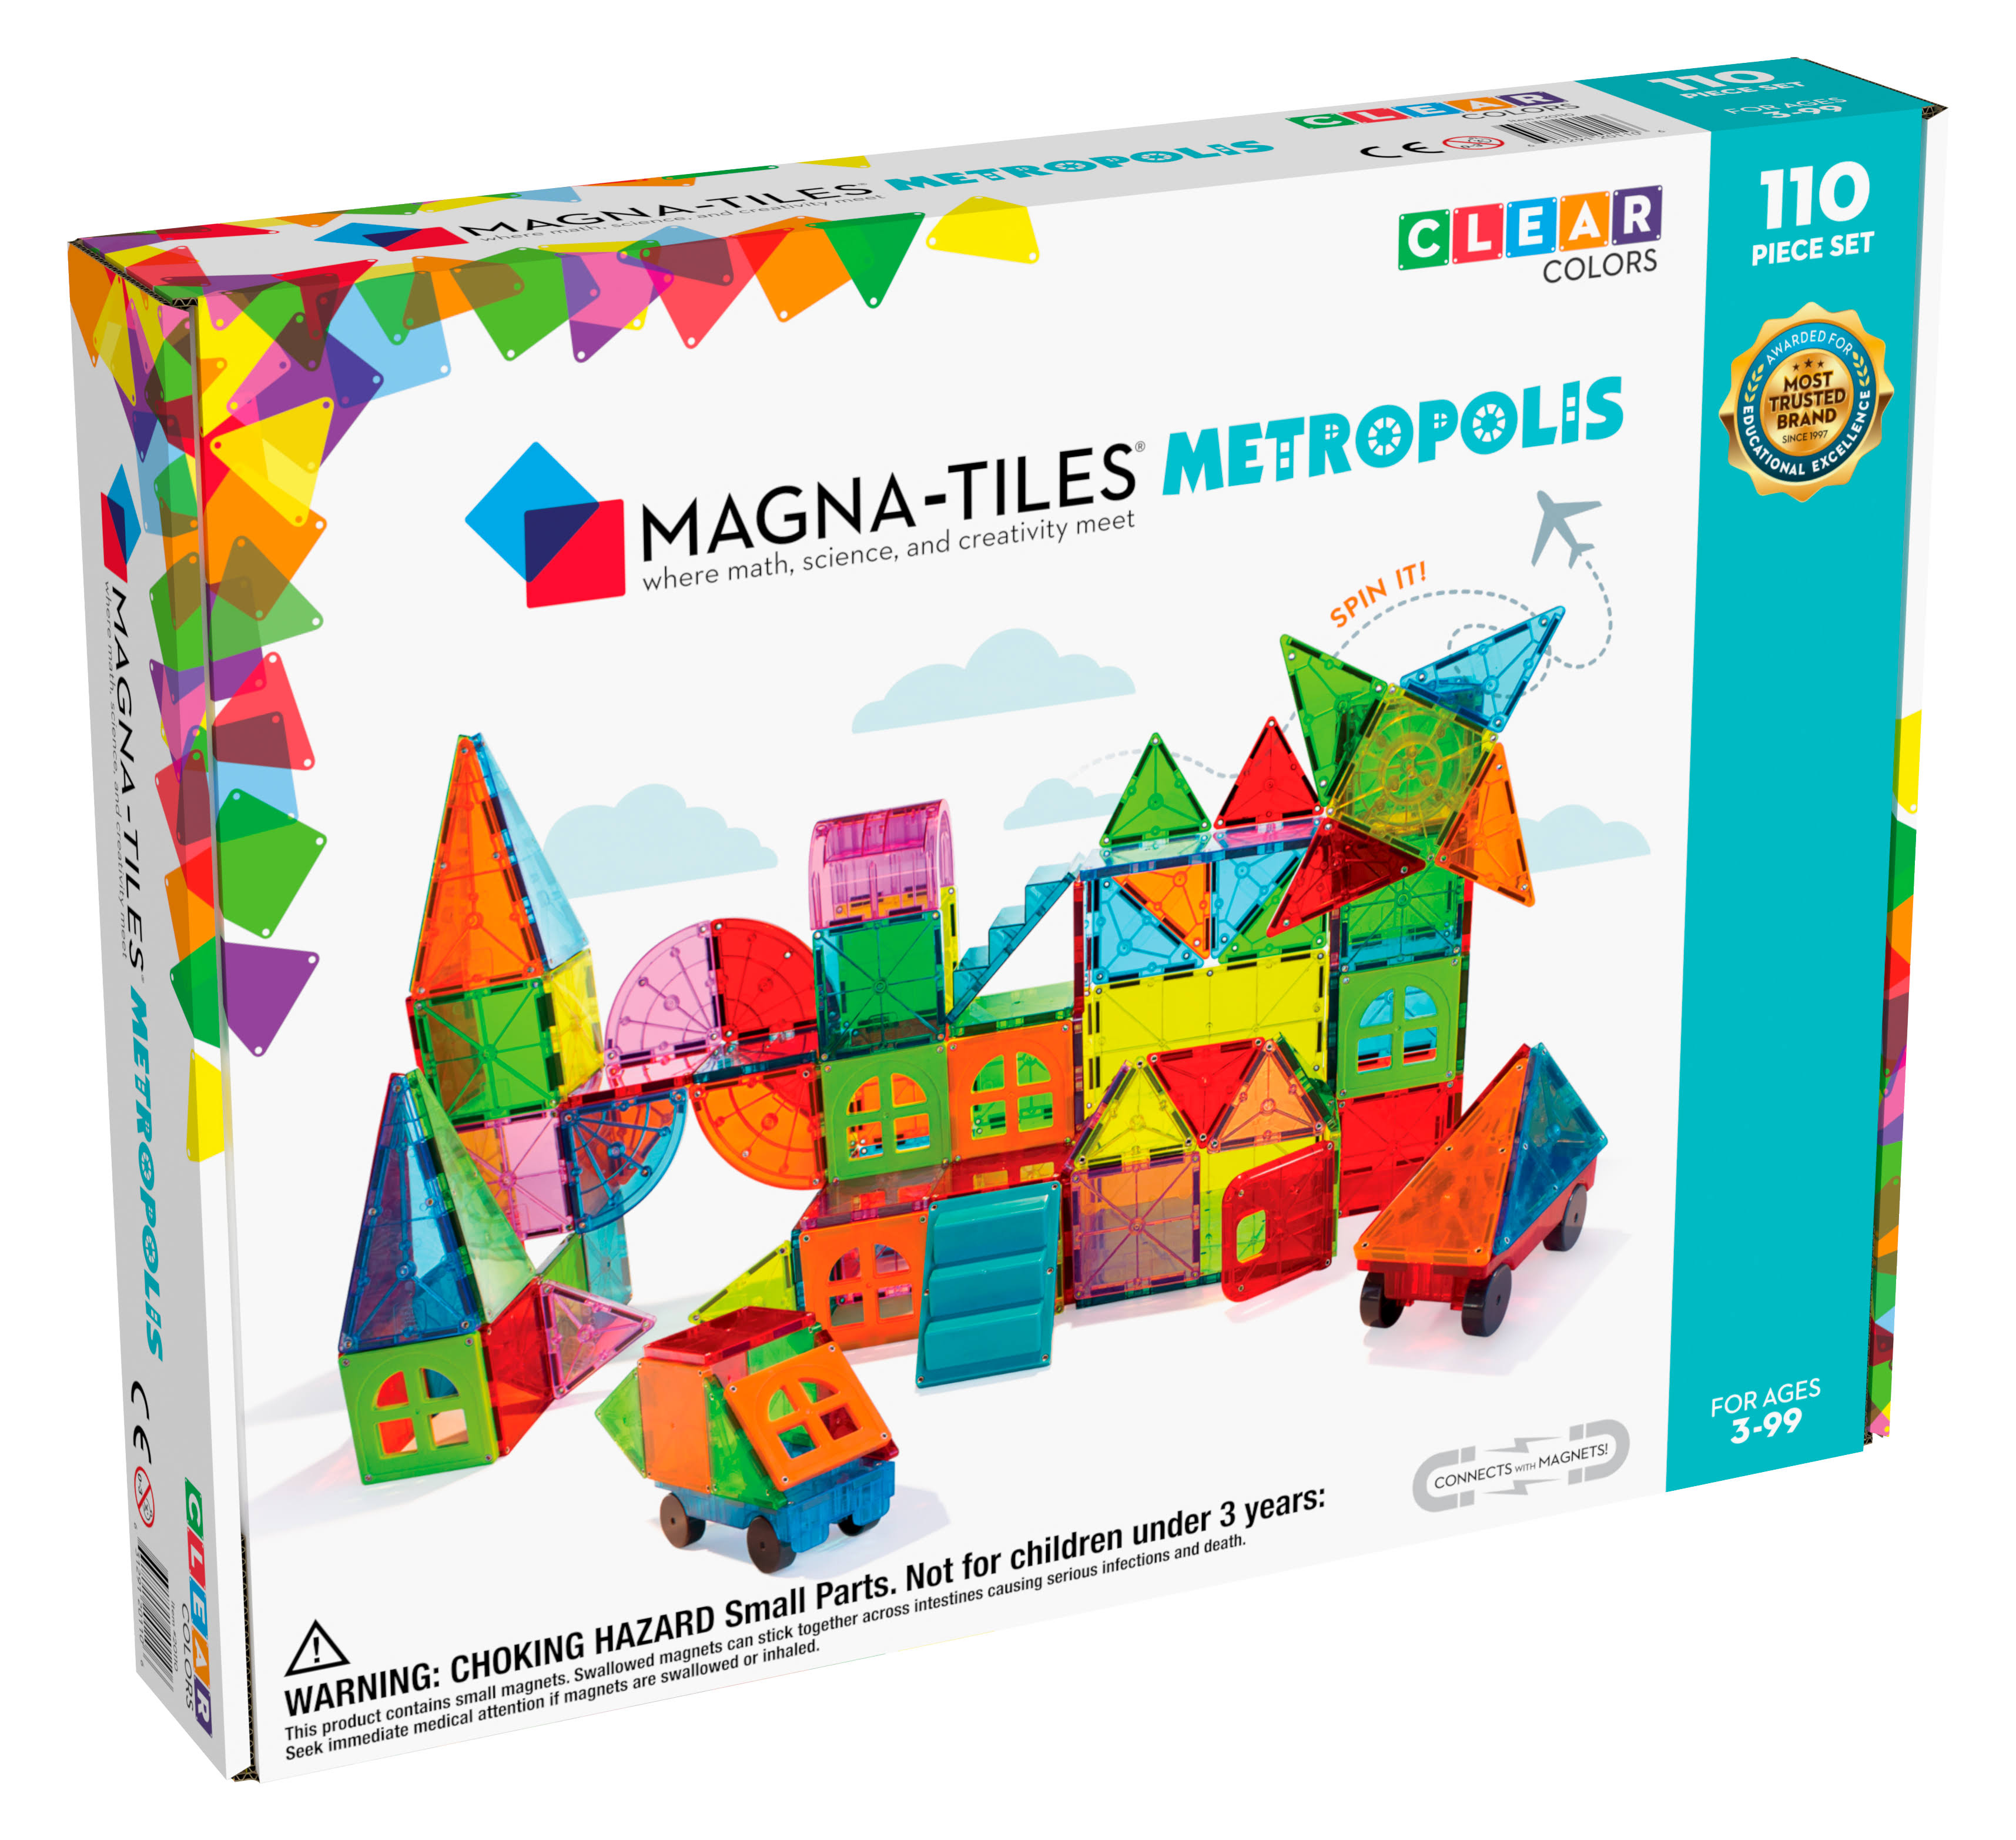 Magna Tiles Metropolis 110 Piece Set 3D Magnetic Building Tiles